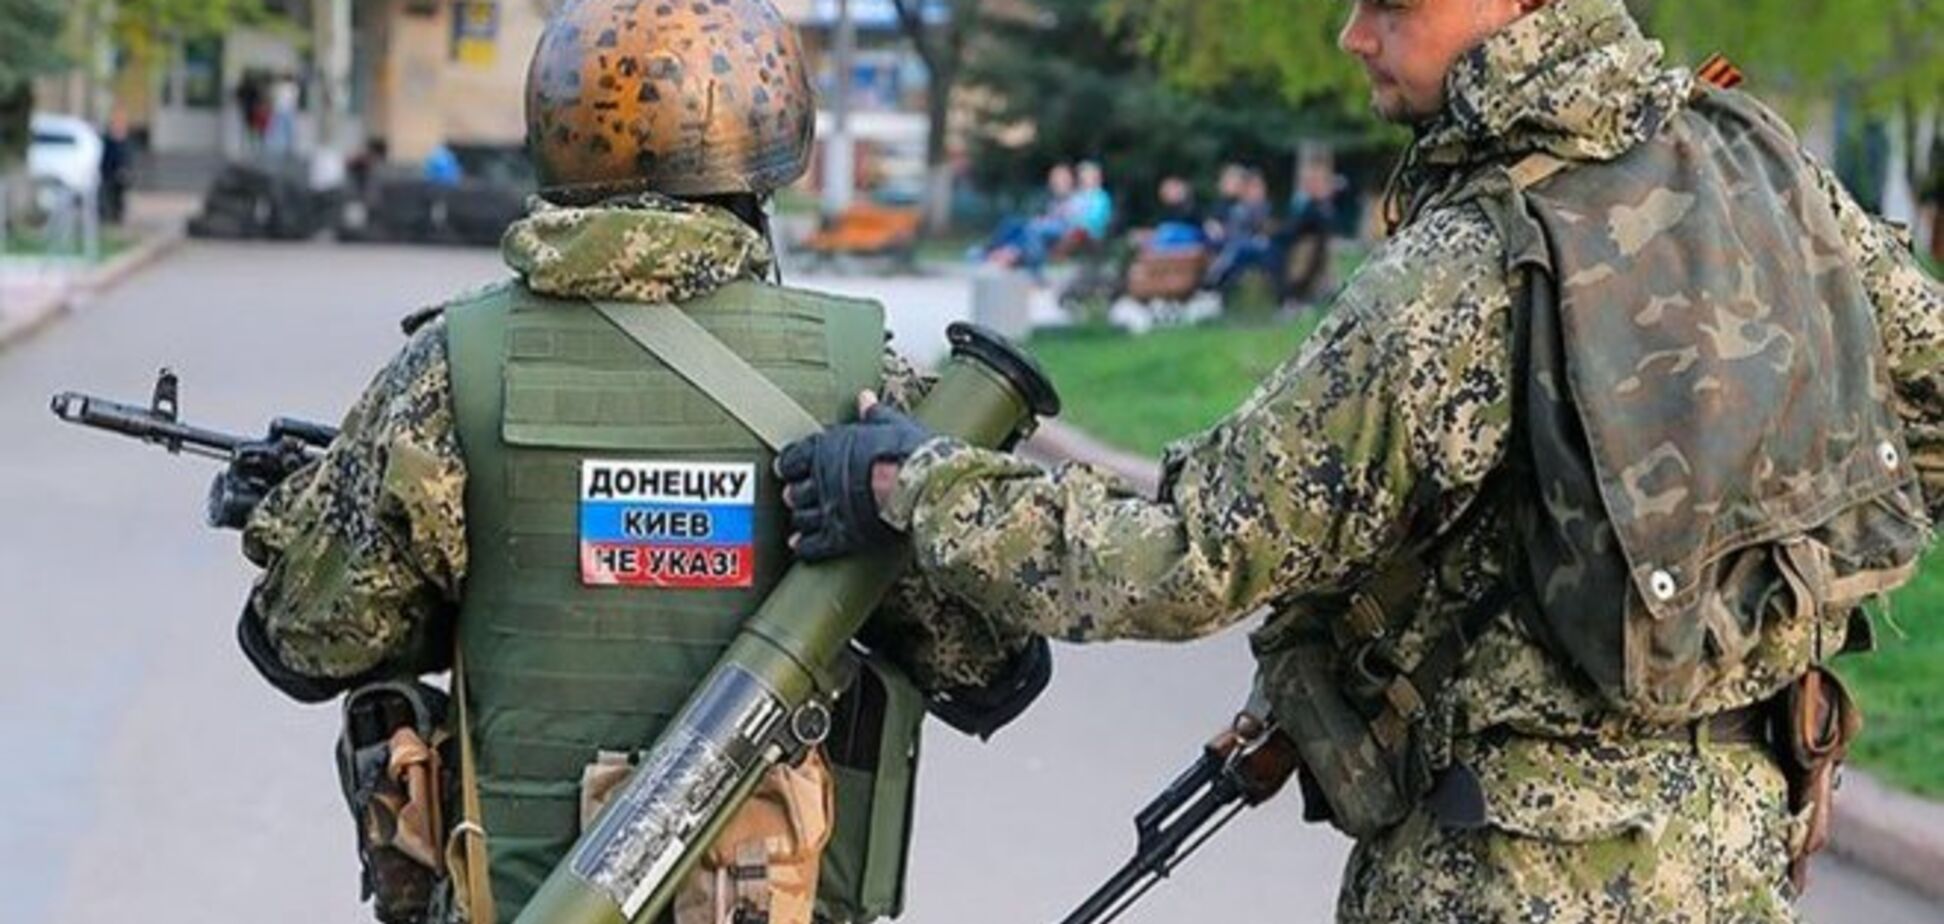 Террористы обстреляли колонну украинских пограничников: есть погибший